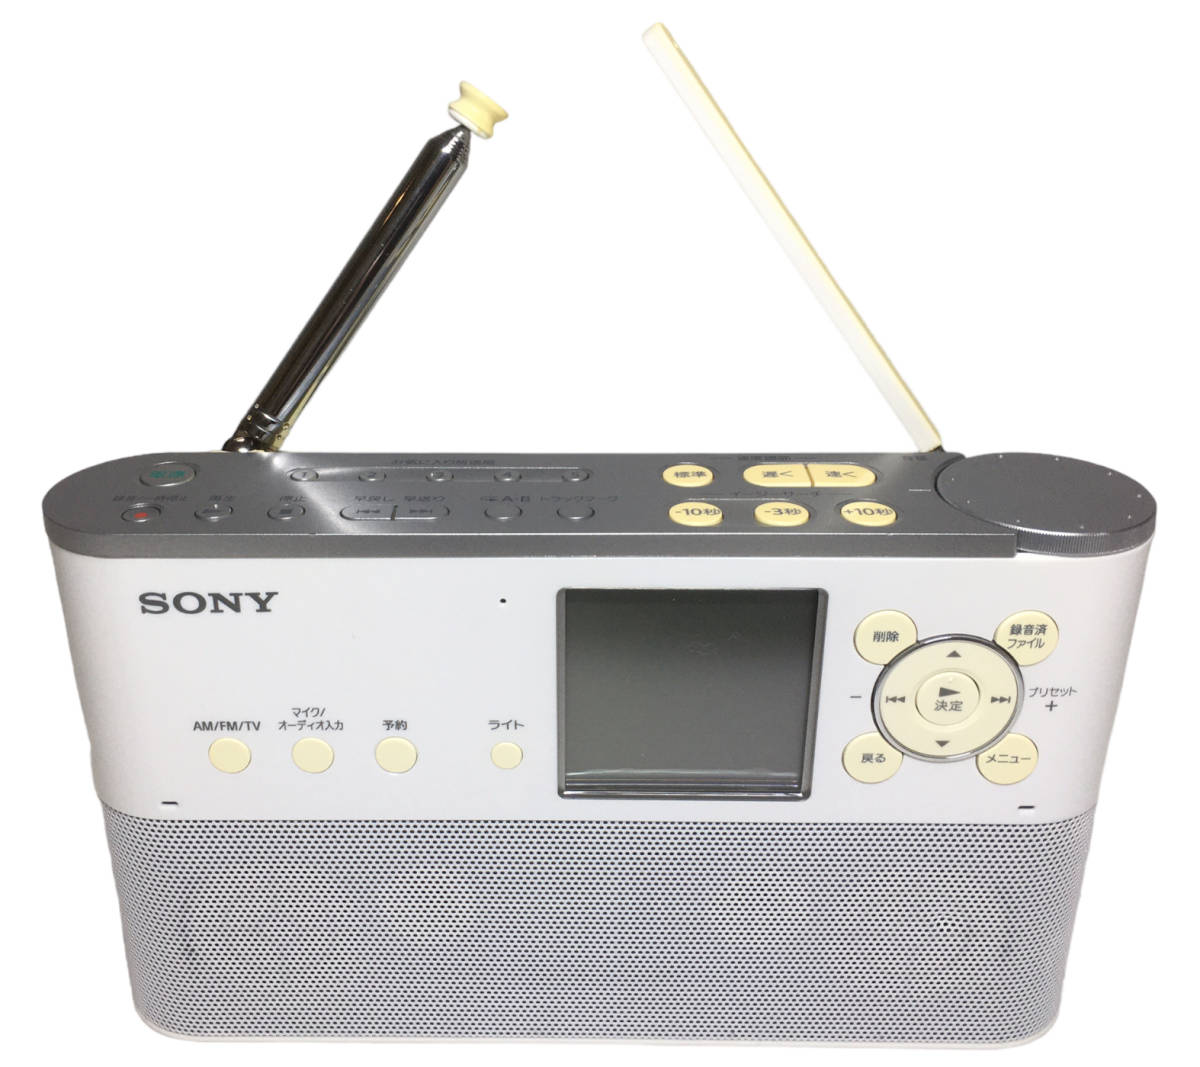 ソニー ポータブルラジオレコーダー 8GB FM/AM/ワイドFM対応 予約録音対応 語学学習機能搭載 ICZ-R250TV (S0012-0280)_画像2